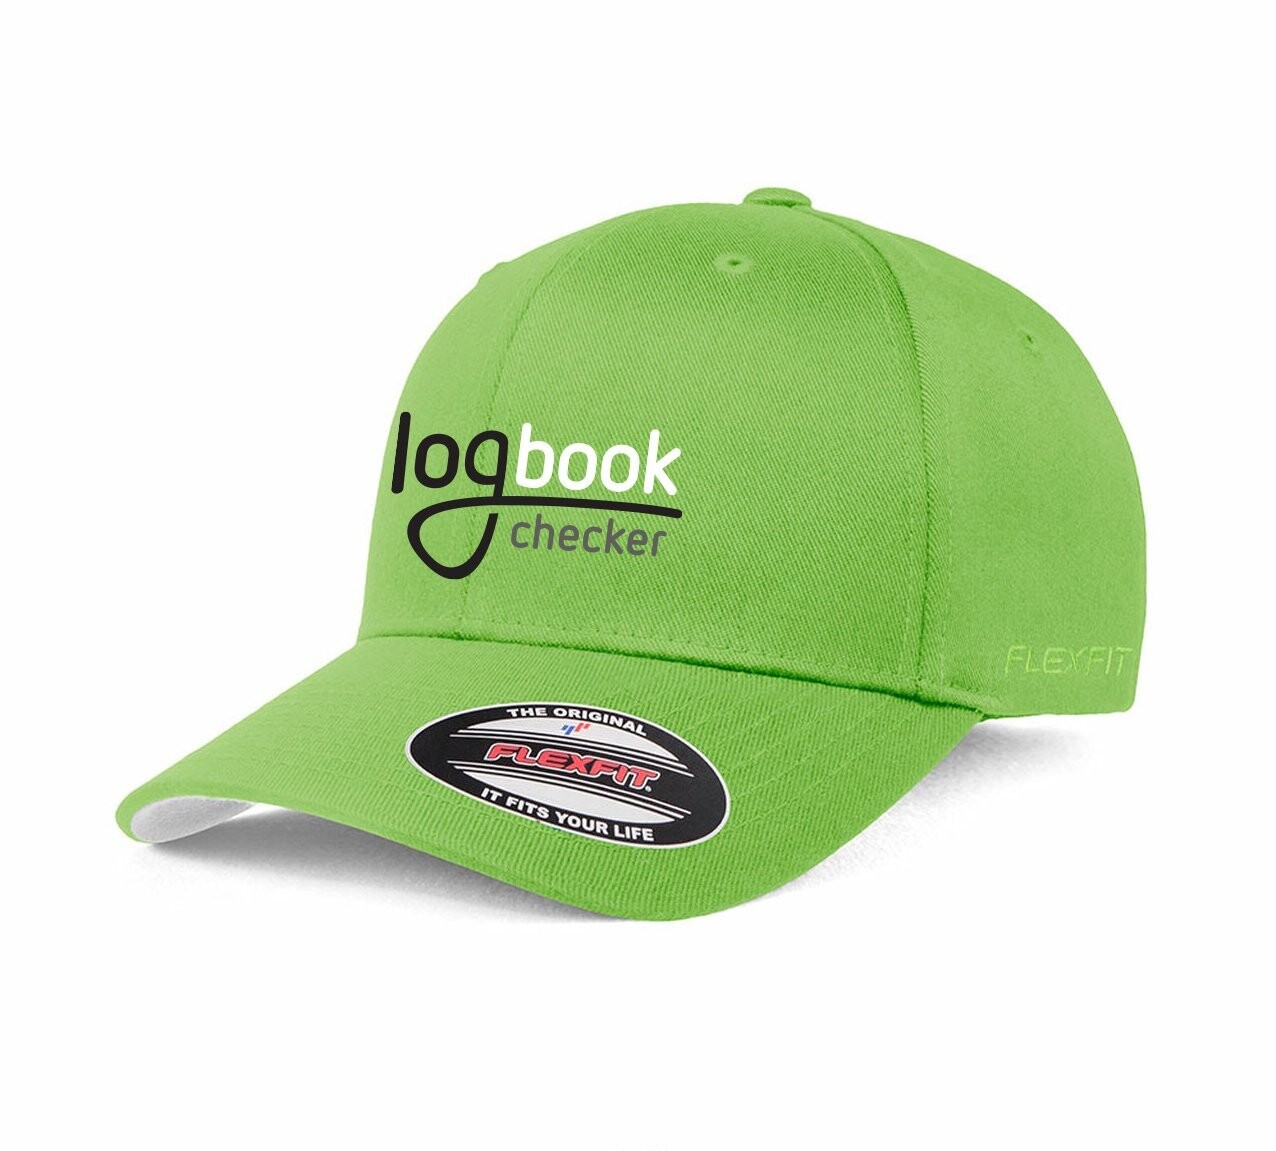 Logbook Checker Cap - Green